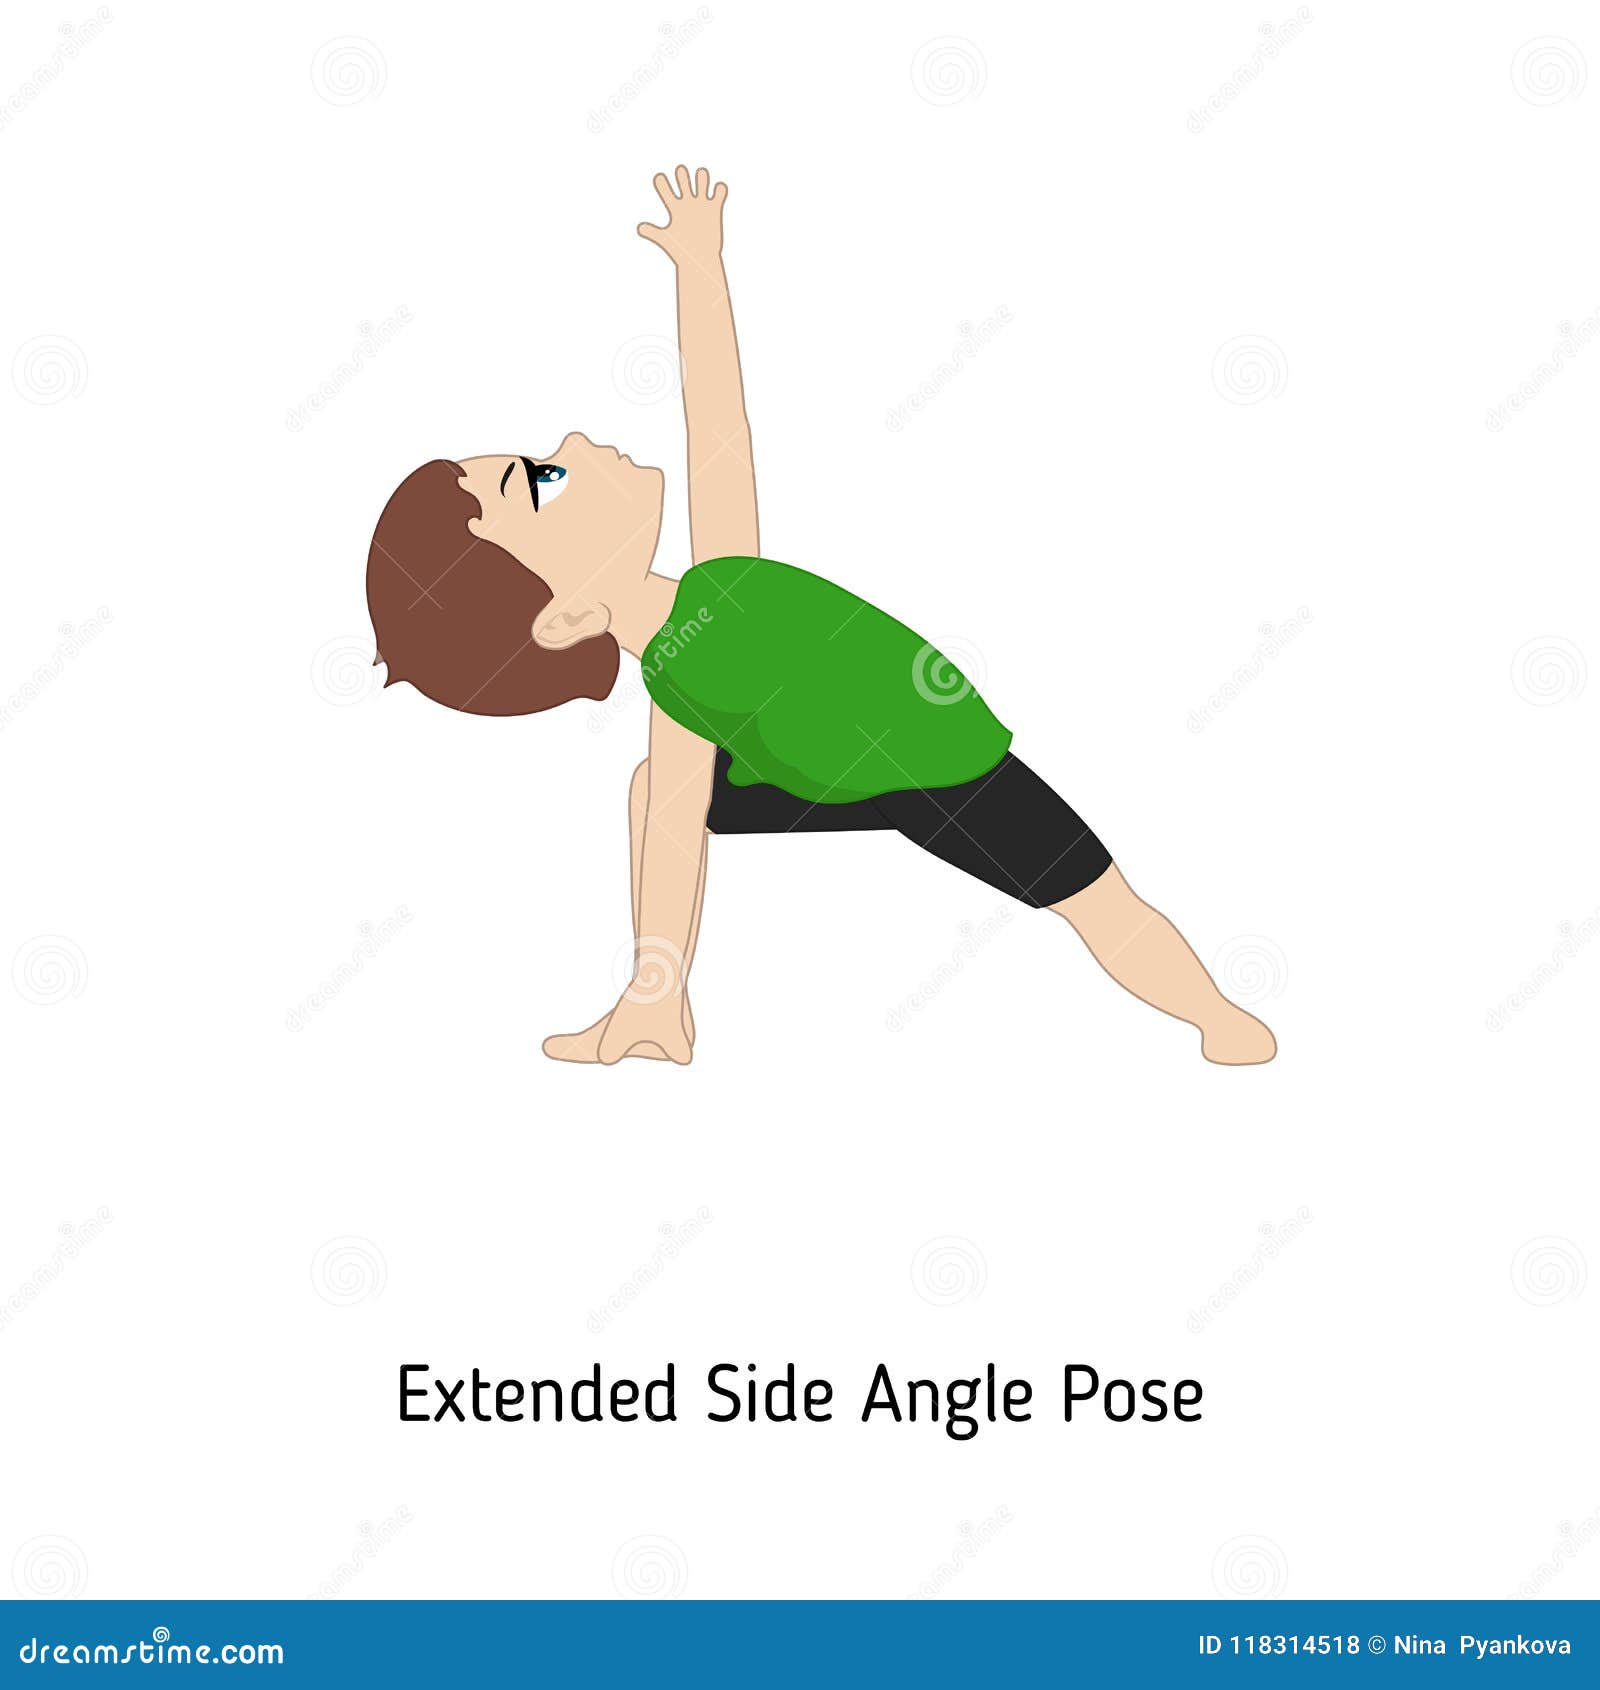 Easing into Utthita Parsvakonasana (Extended Side Angle Pose) – Right to Joy